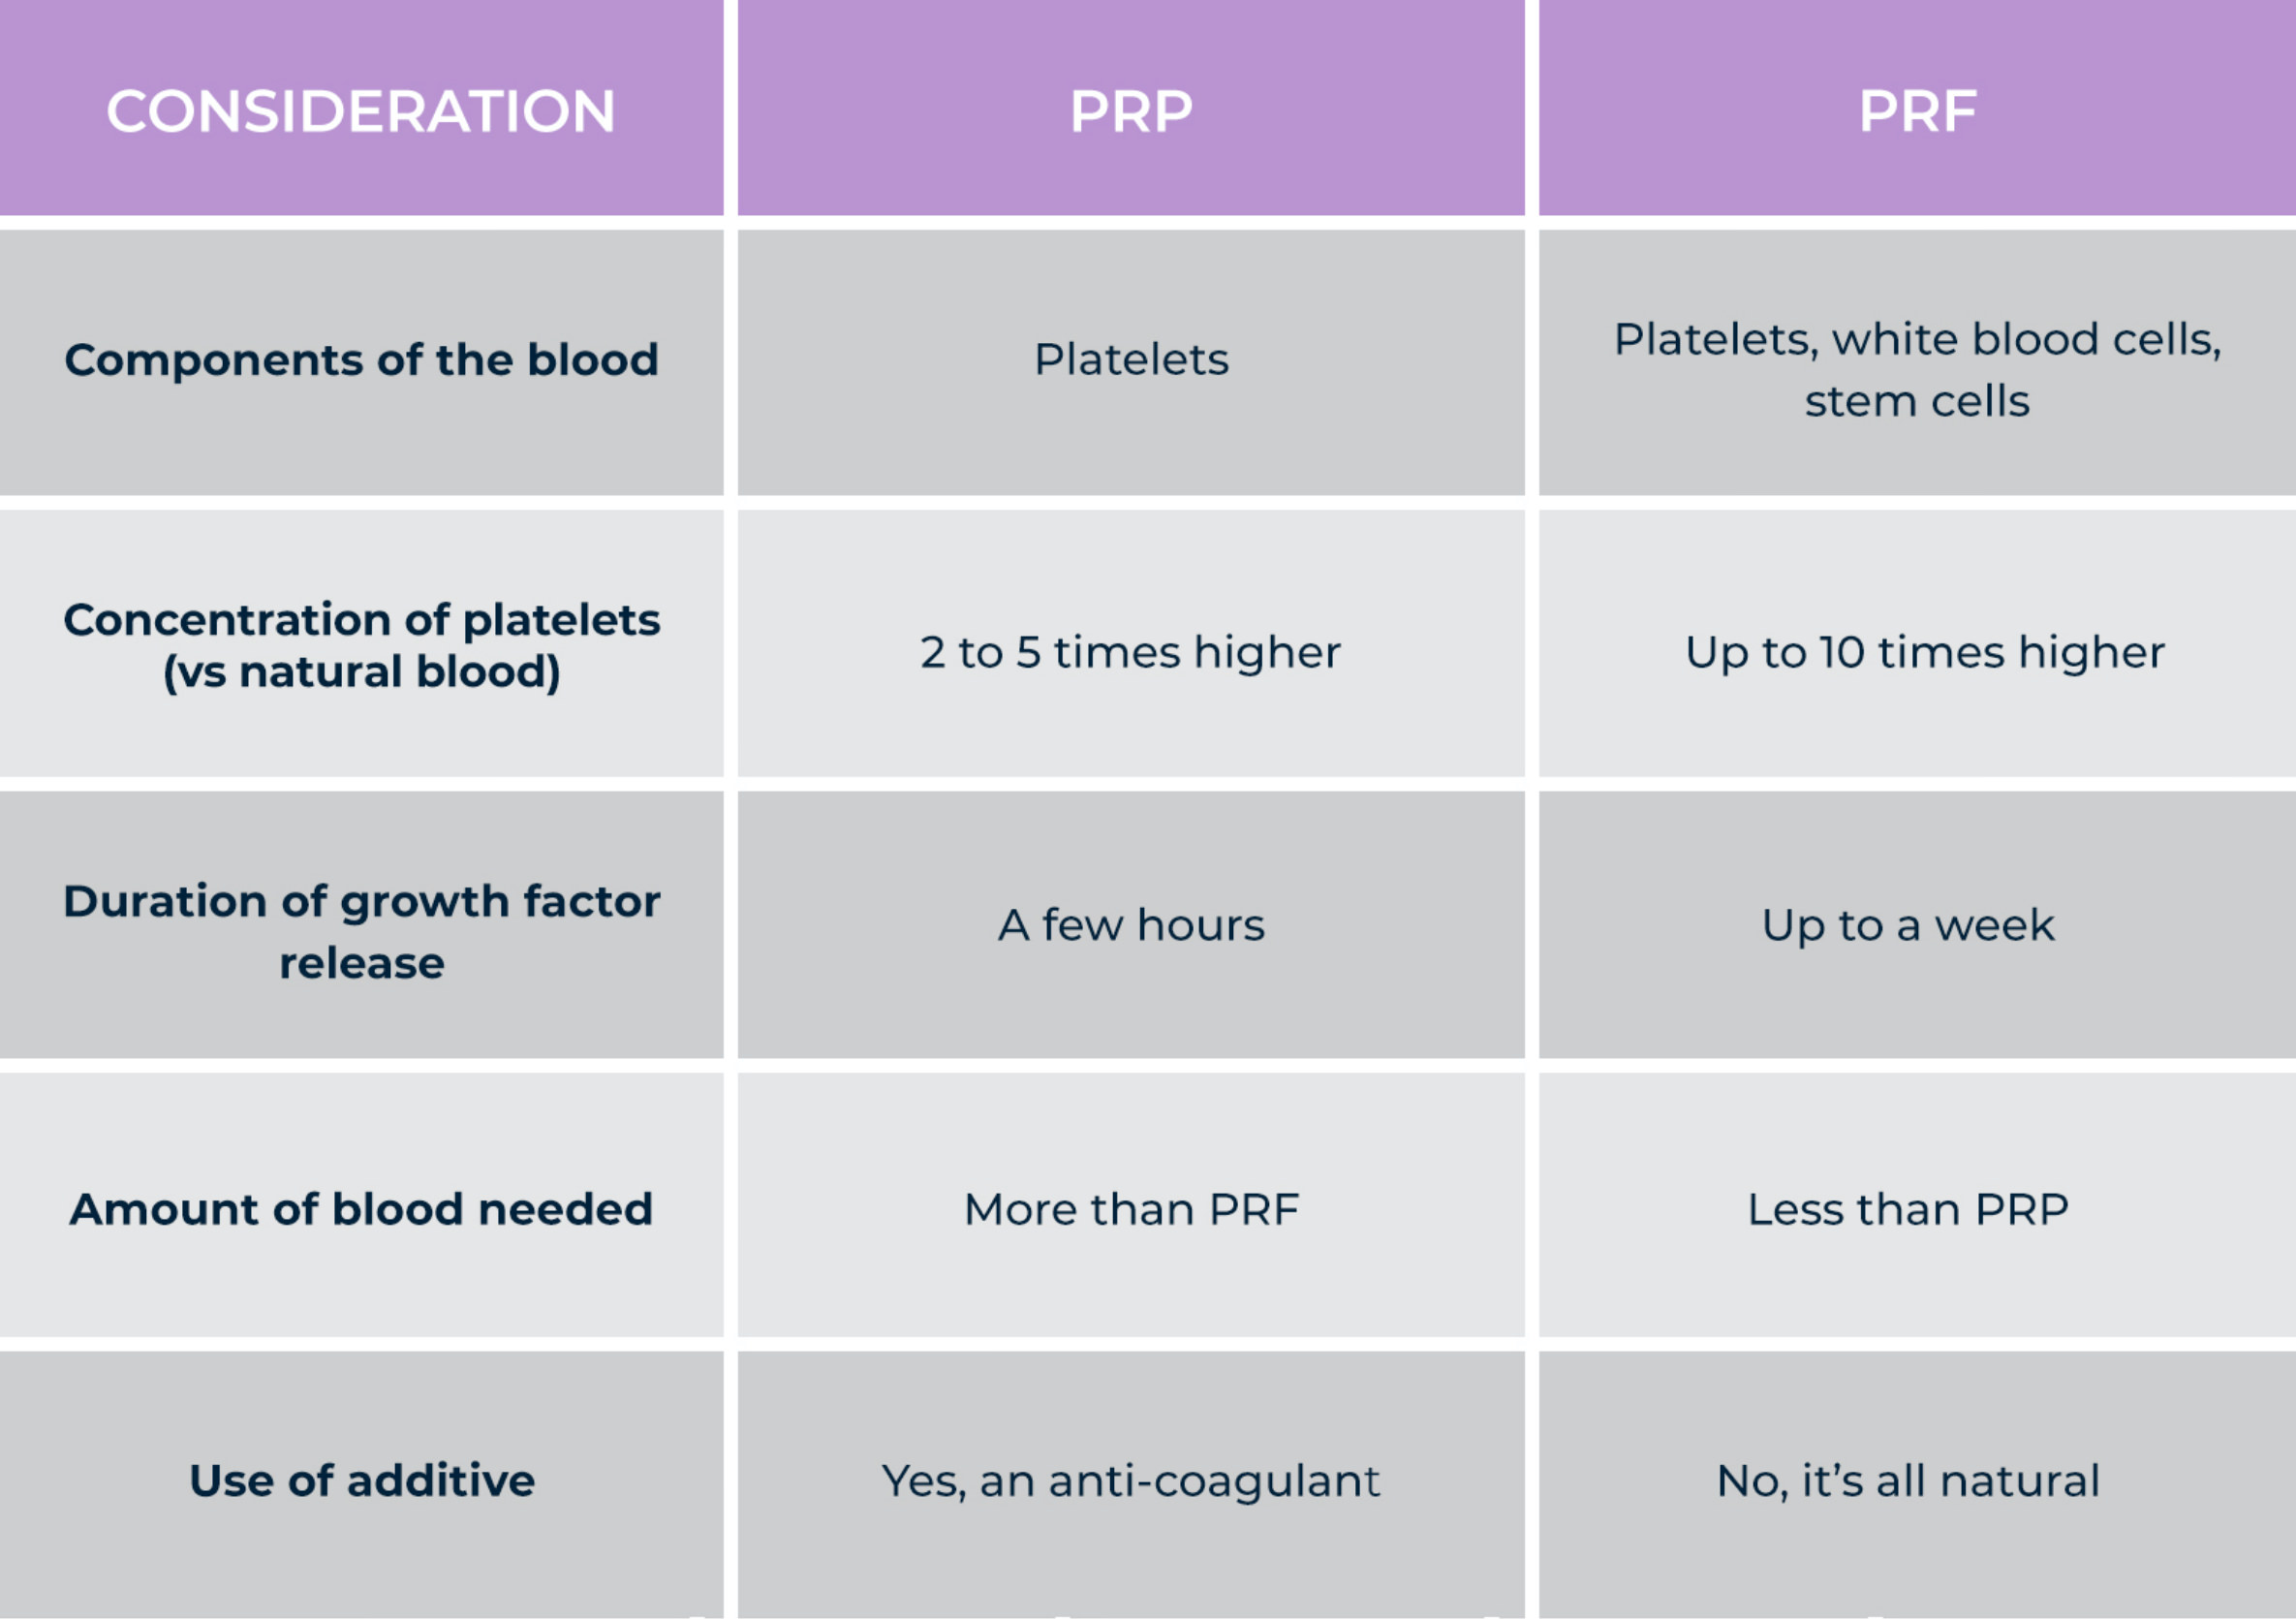 PRP vs PRF Comparison table